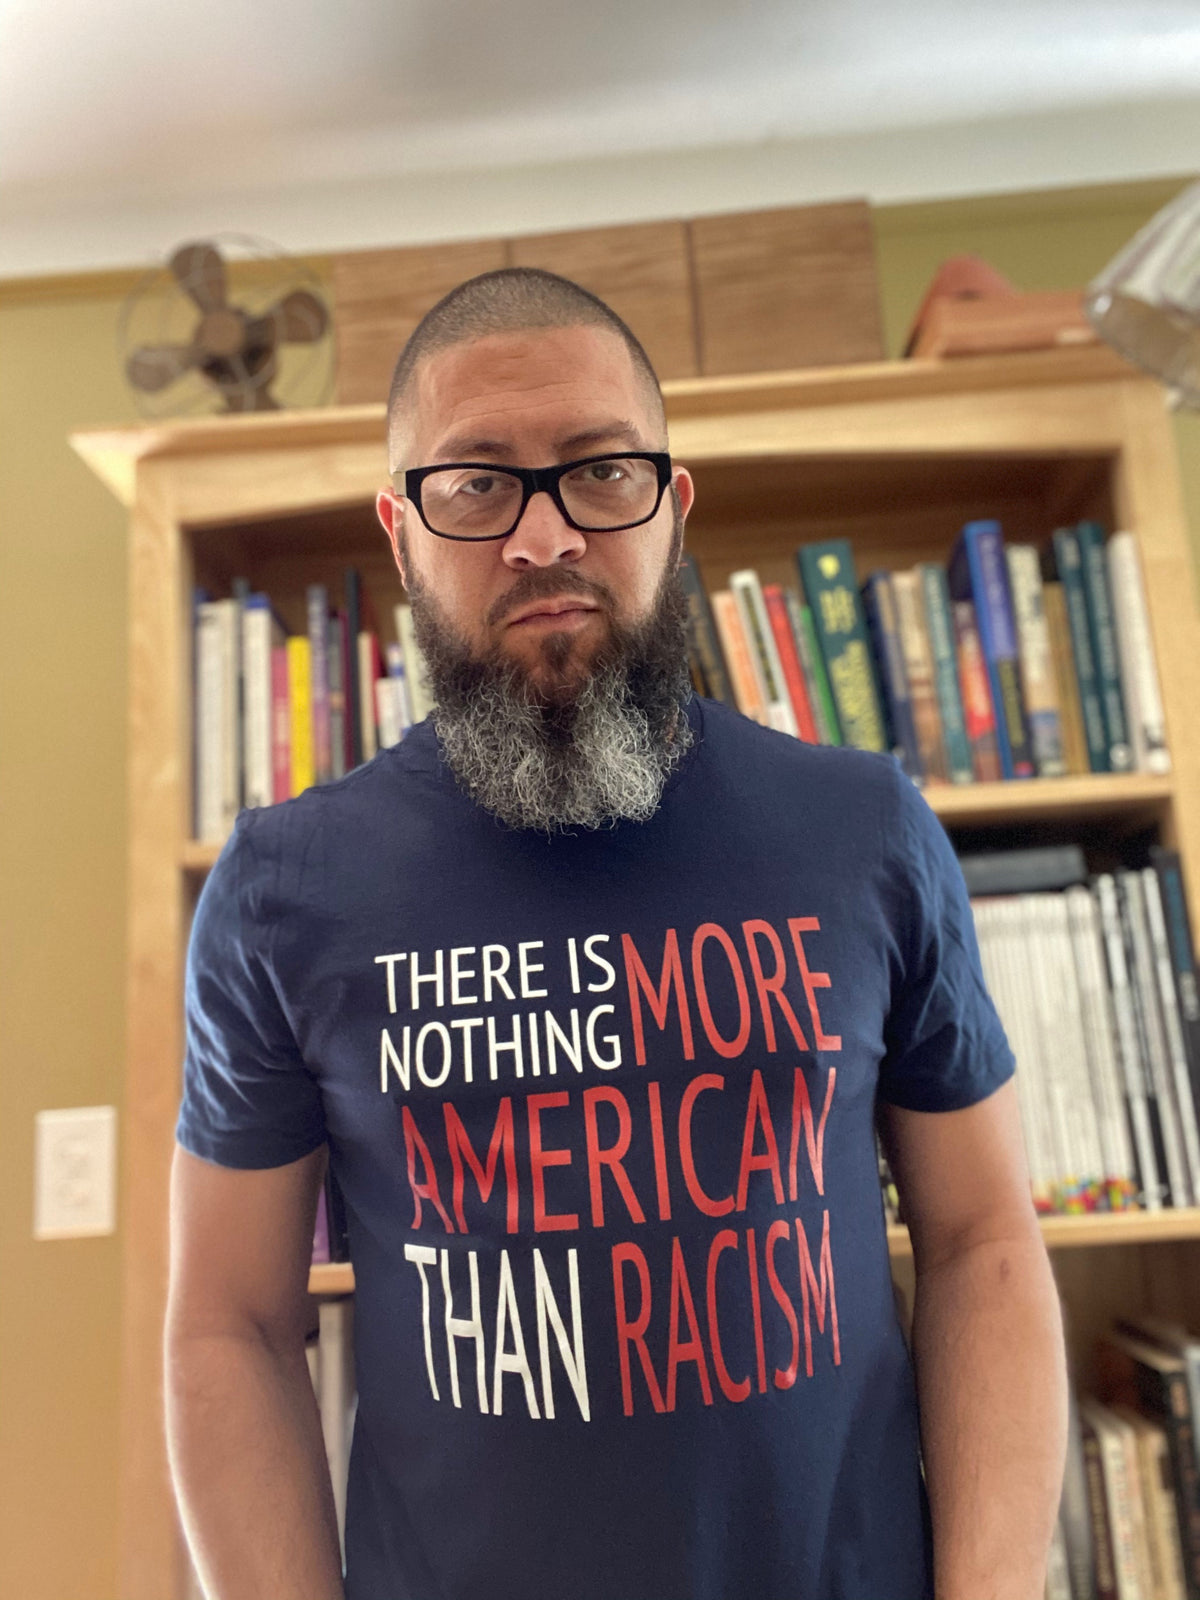 More American Racism (Men’s)